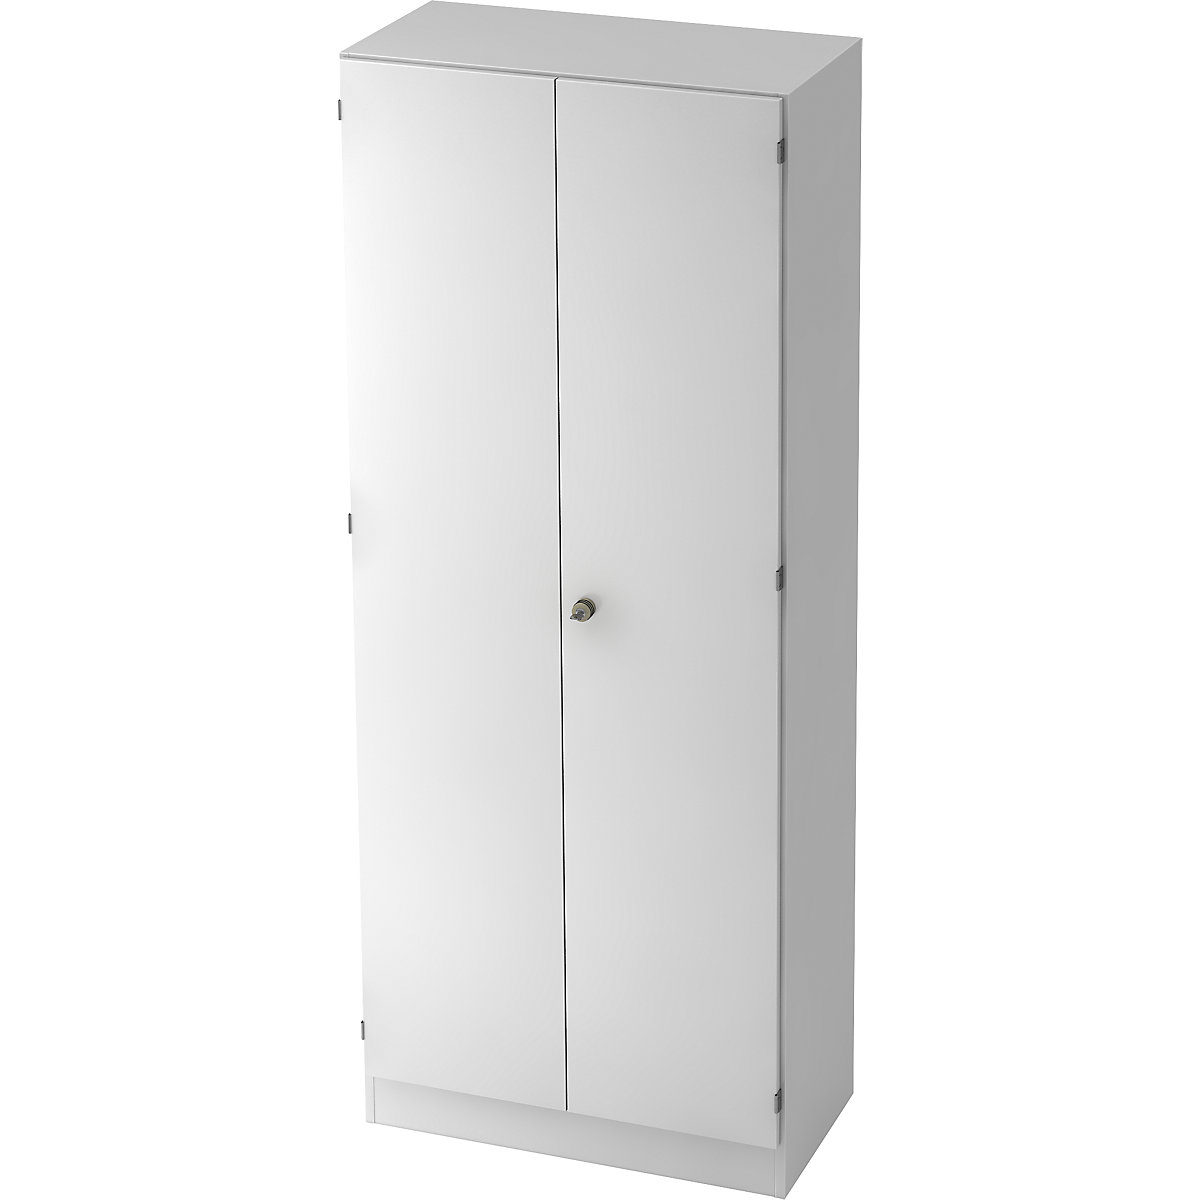 Garderobenschrank FINO, mit 1 Fachboden und 1 Kleiderstange, weiß-7